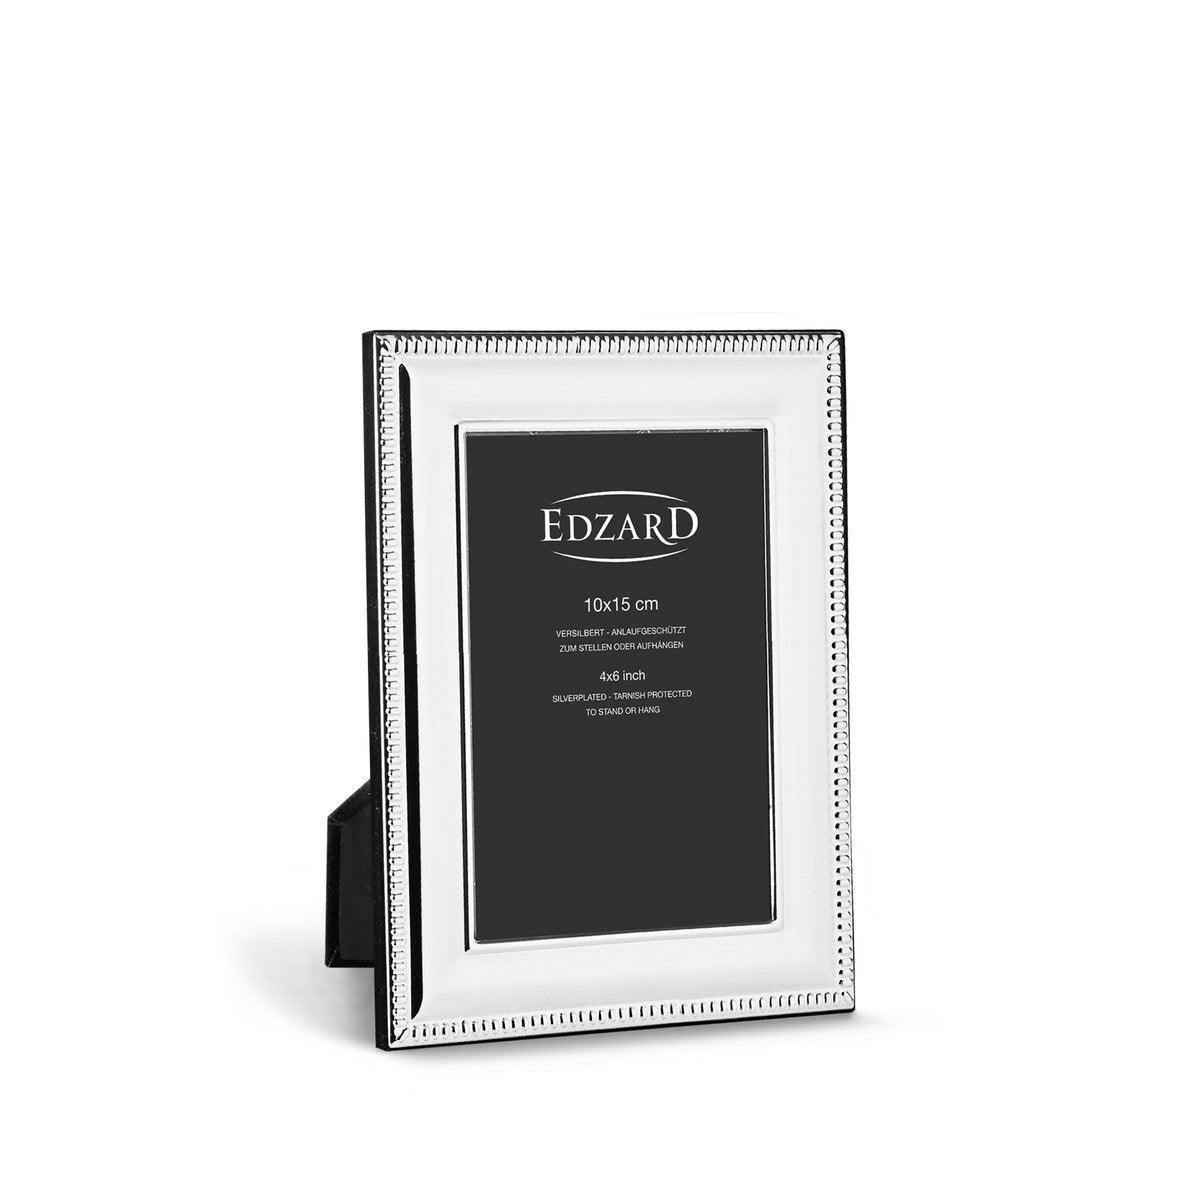 EDZARD Fotorahmen Novara für Foto 10 x 15 cm, edel versilbert, anlaufgeschützt, mit 2 Aufhängern - HomeDesign Knaus